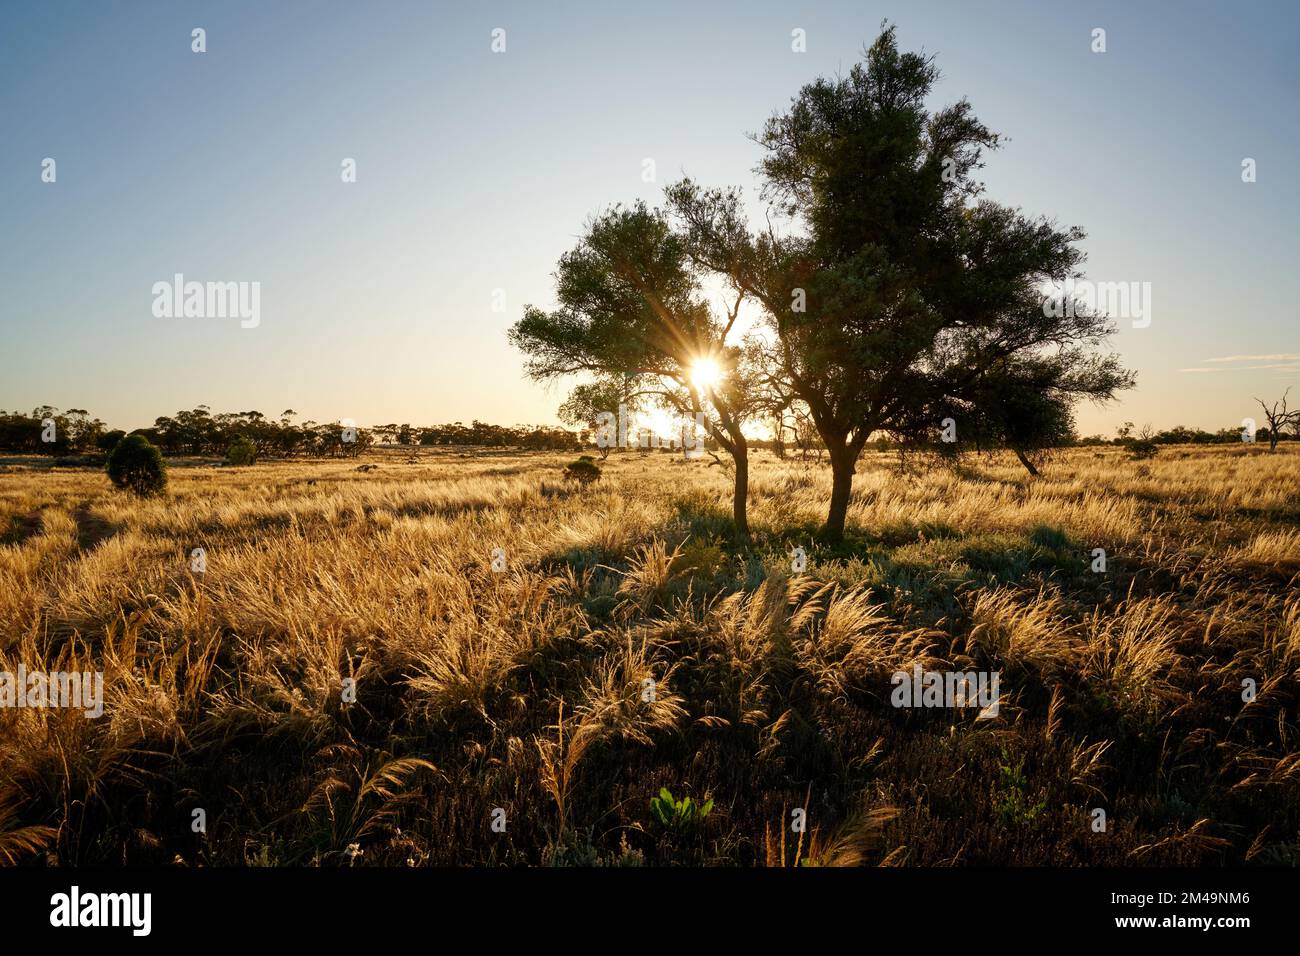 Paysage de printemps dans le nord-ouest de Victoria, Australie. La lumière de la fin de l'après-midi illumine l'herbe de Spear indigène dans ce lieu semi-aride. Banque D'Images